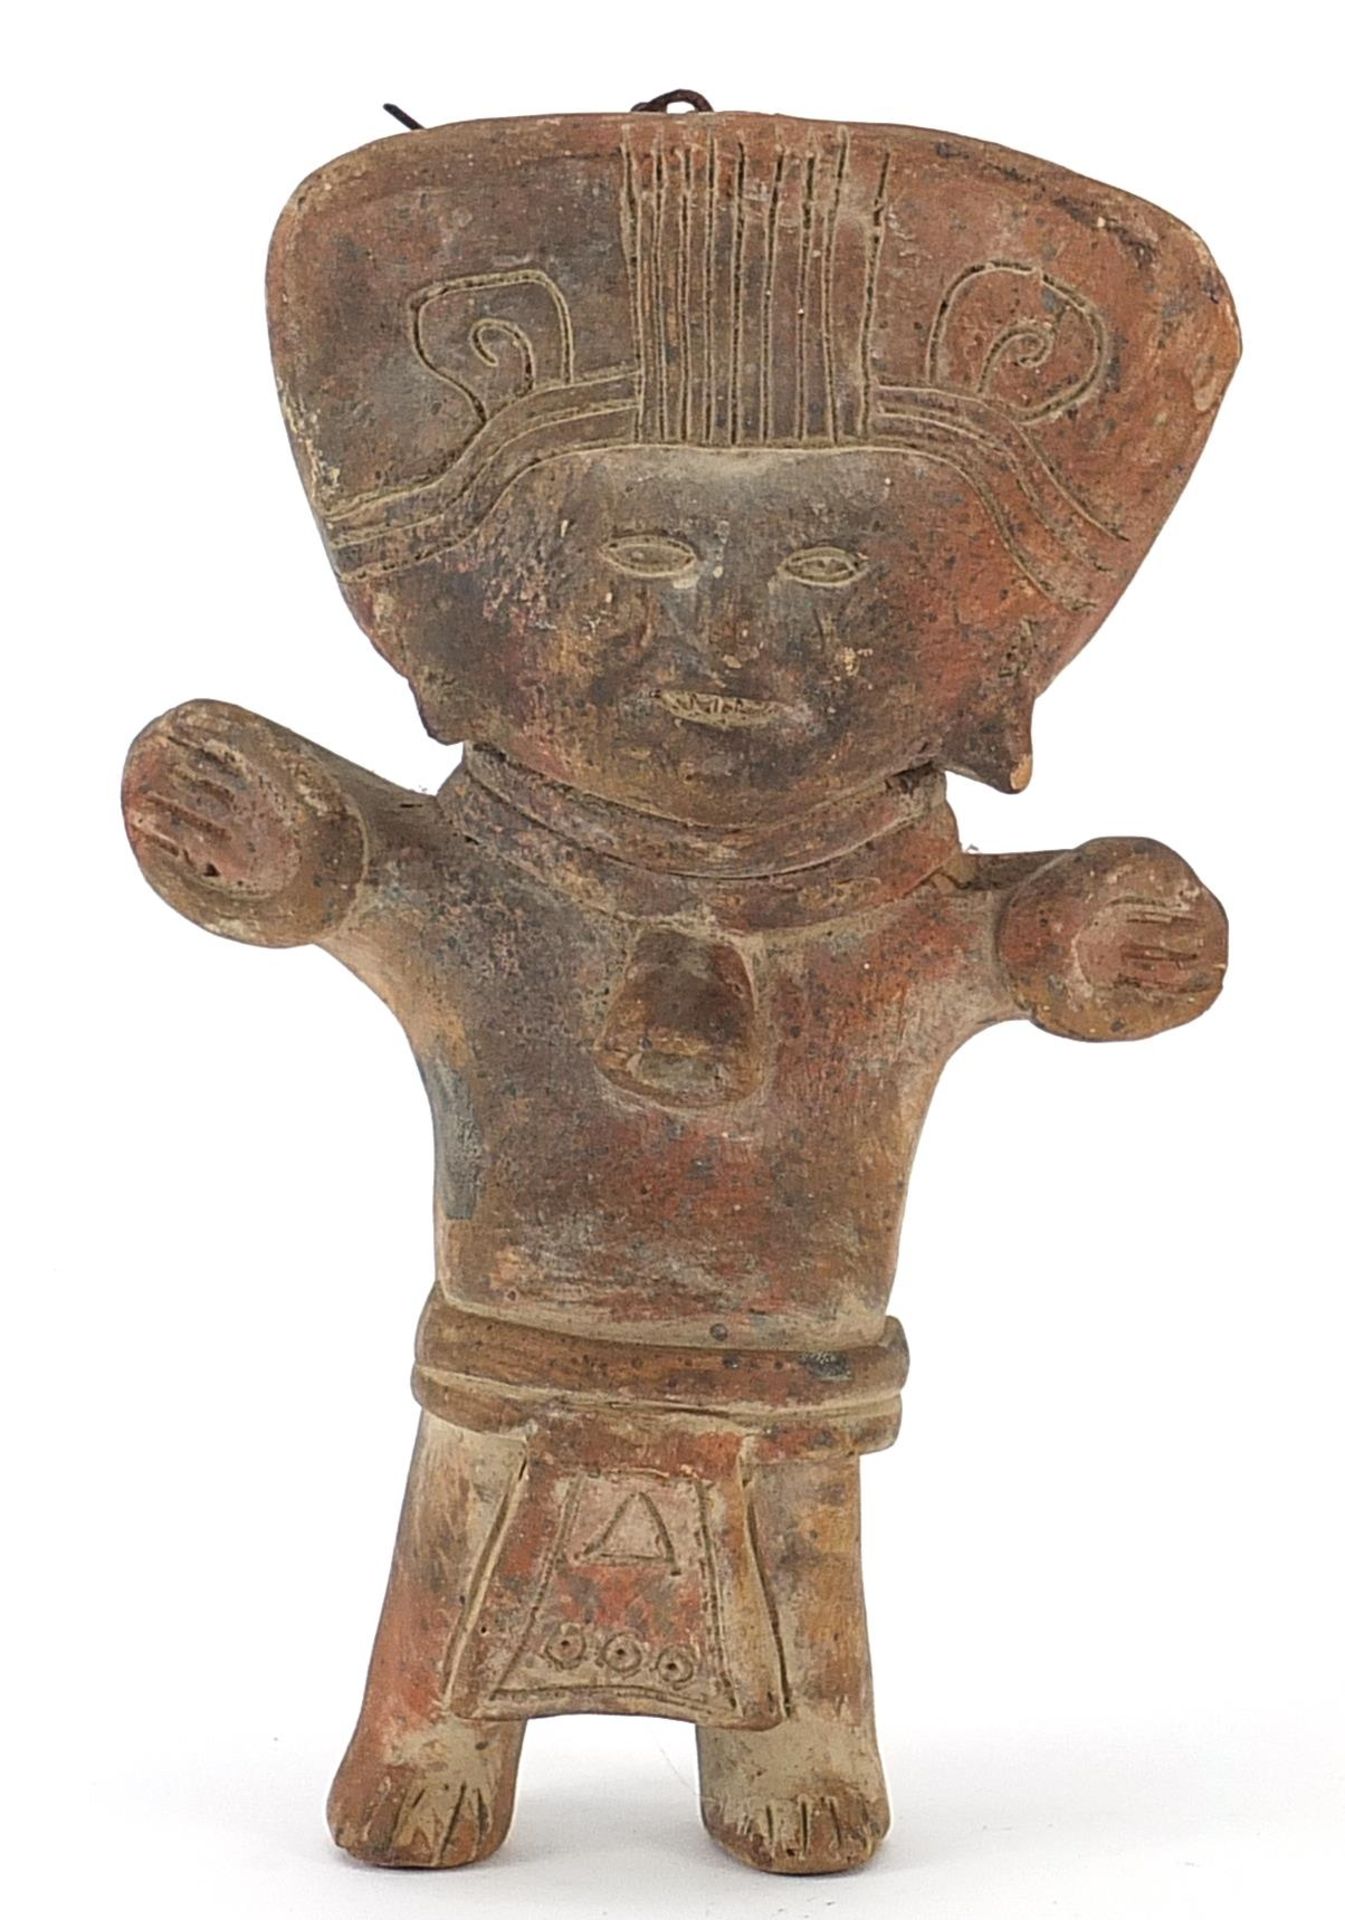 Peruvian terracotta figure, 22.5cm high